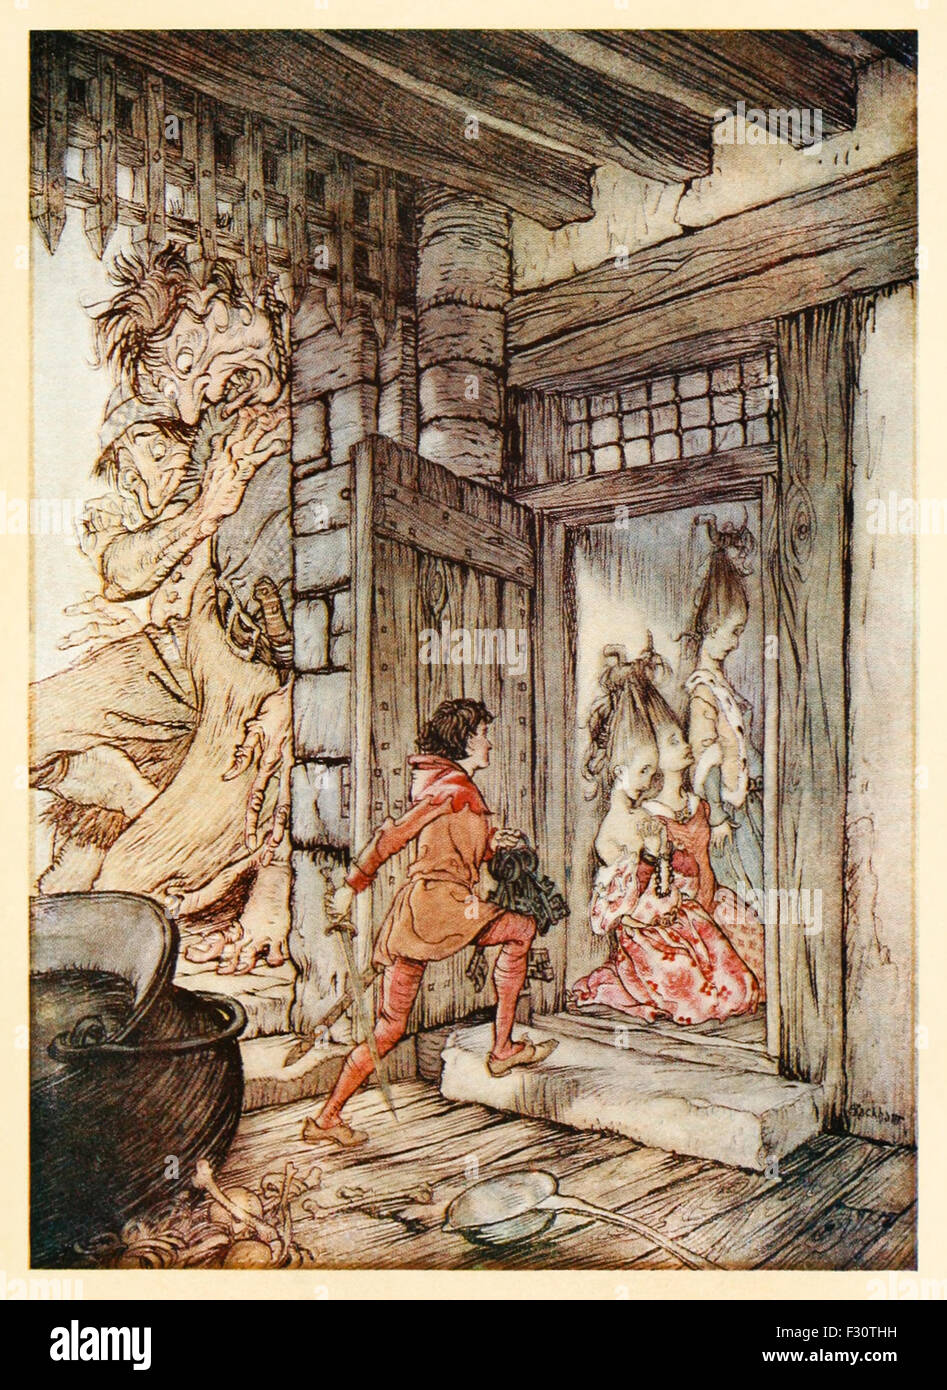 "Nehmen die Schlüssel des Schlosses, entriegelt Jack alle Türen" von "Jack the Giant Killer" im "Englischen Märchen", Illustration von Arthur Rackham (1867-1939). Siehe Beschreibung für mehr Informationen. Stockfoto